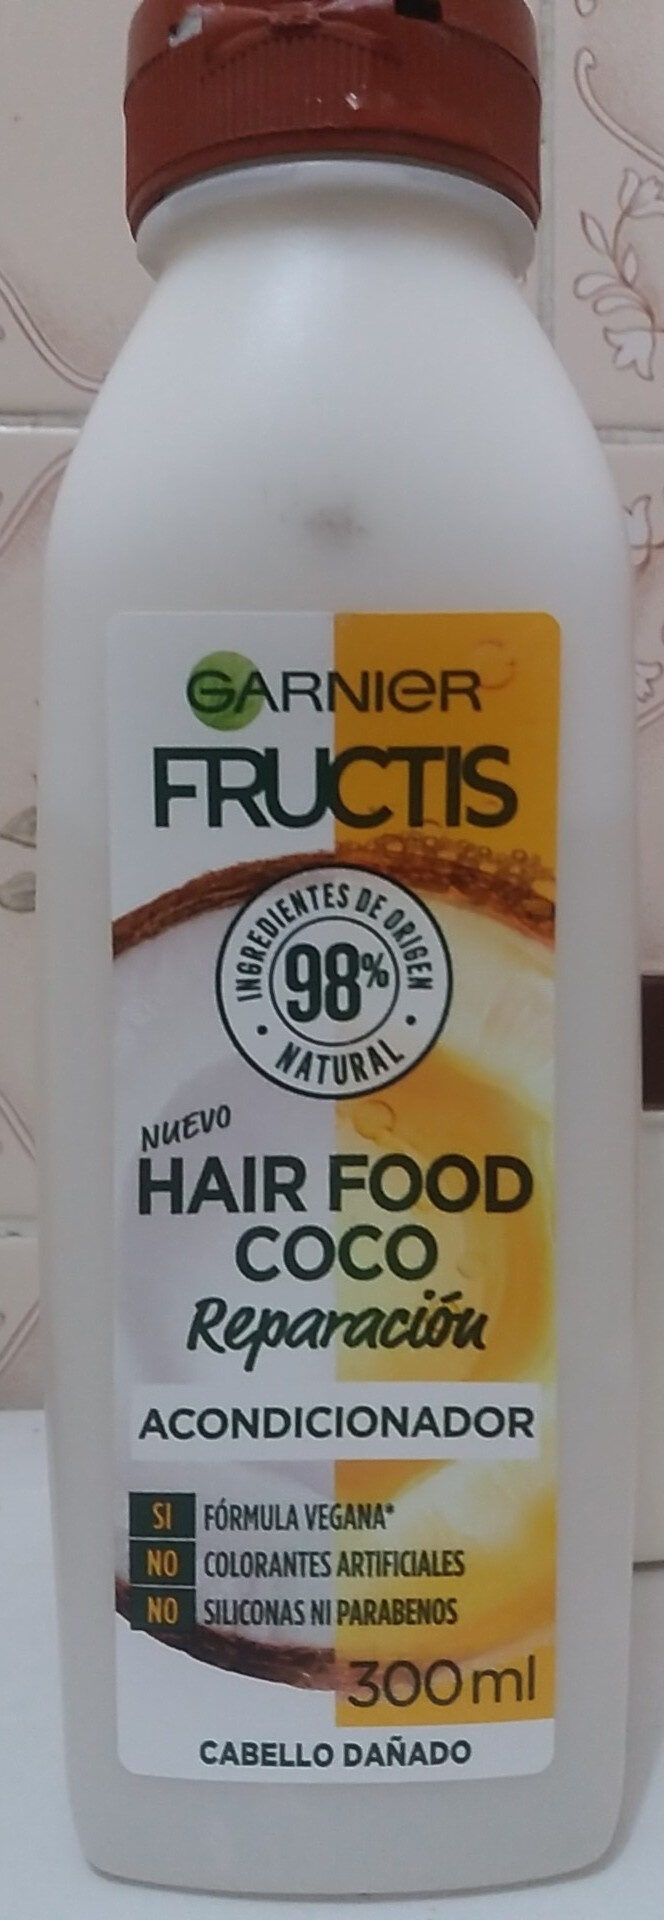 Hair Food Coco Acondicionador - Product - es